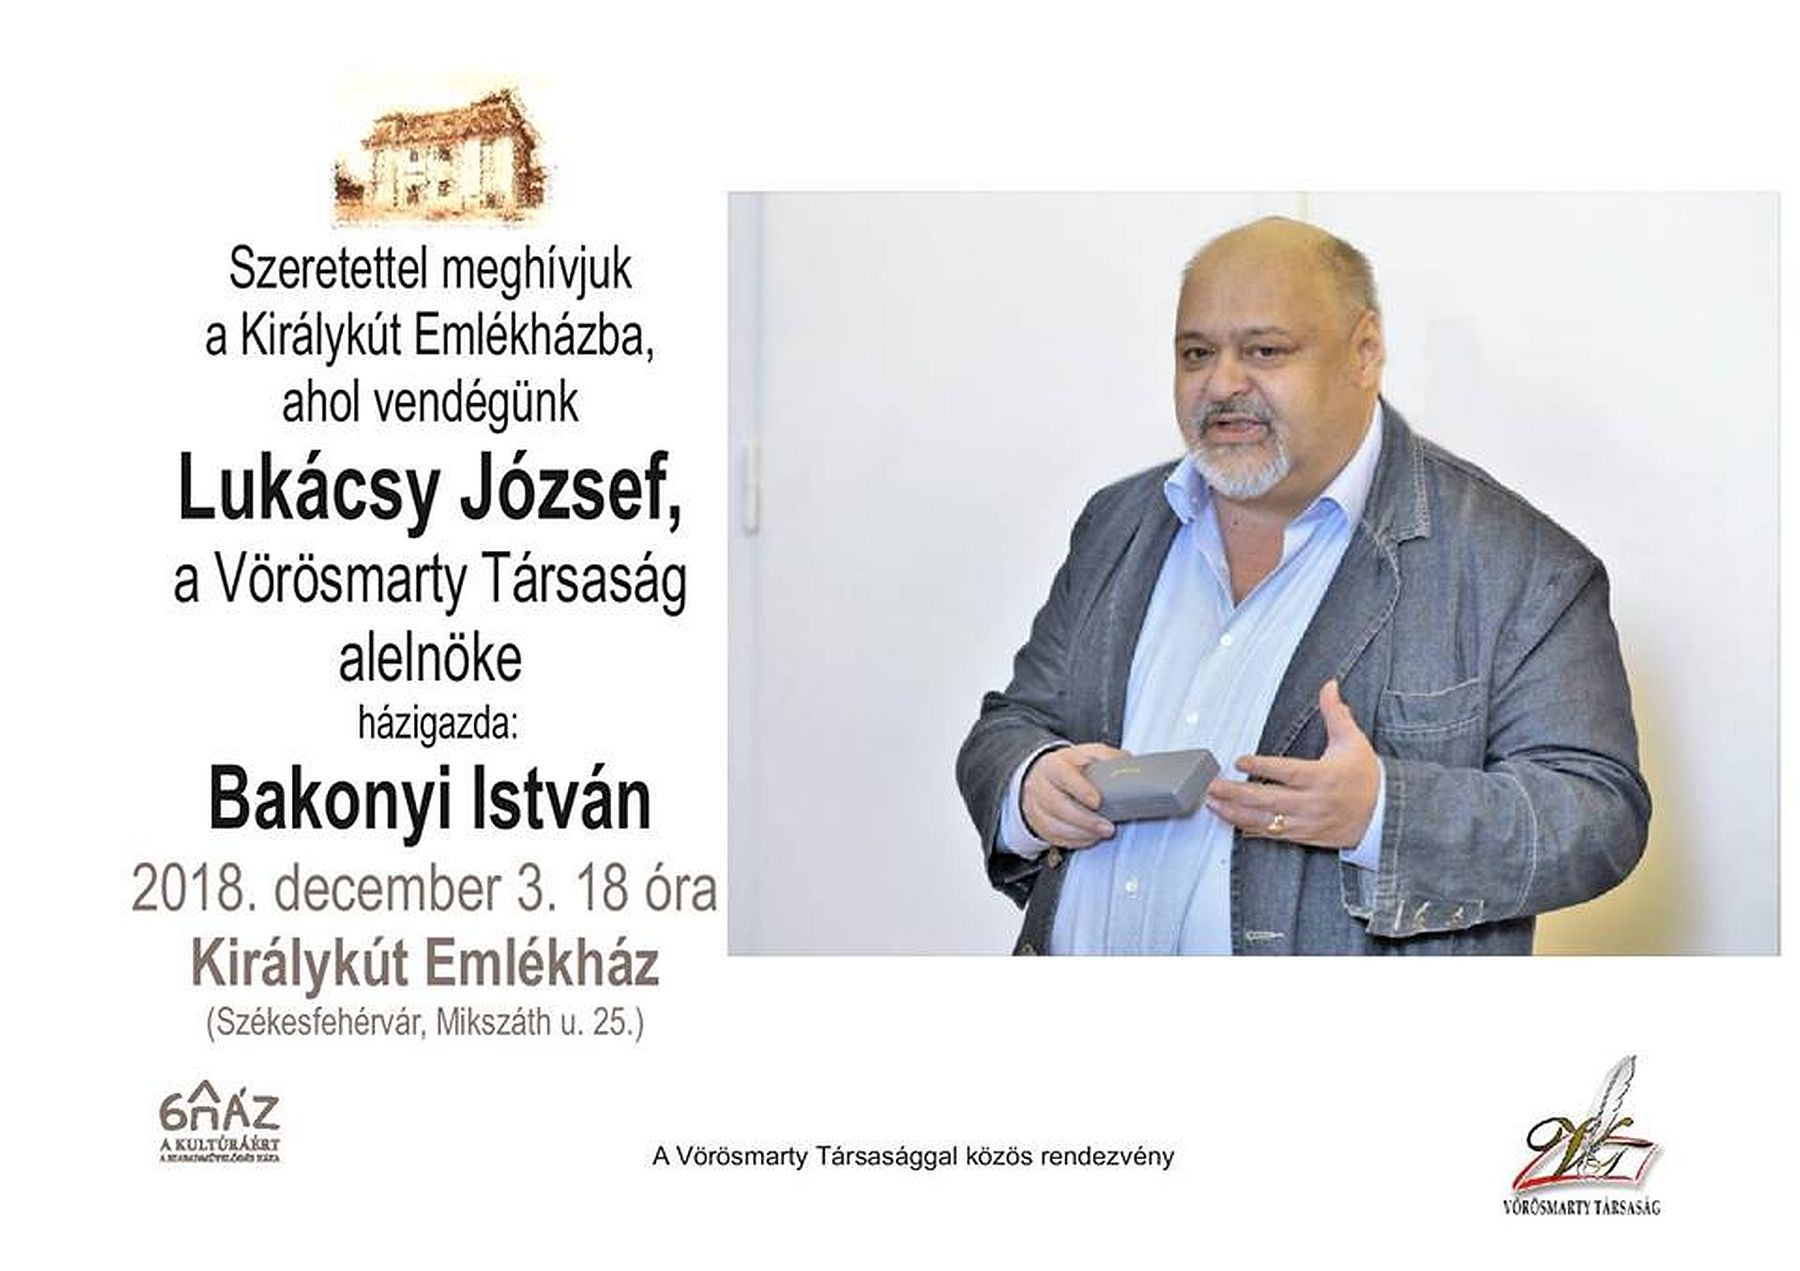 Dr. Lukácsy József lesz a hétfő esti beszélgetőtárs a Királykút Emlékházban